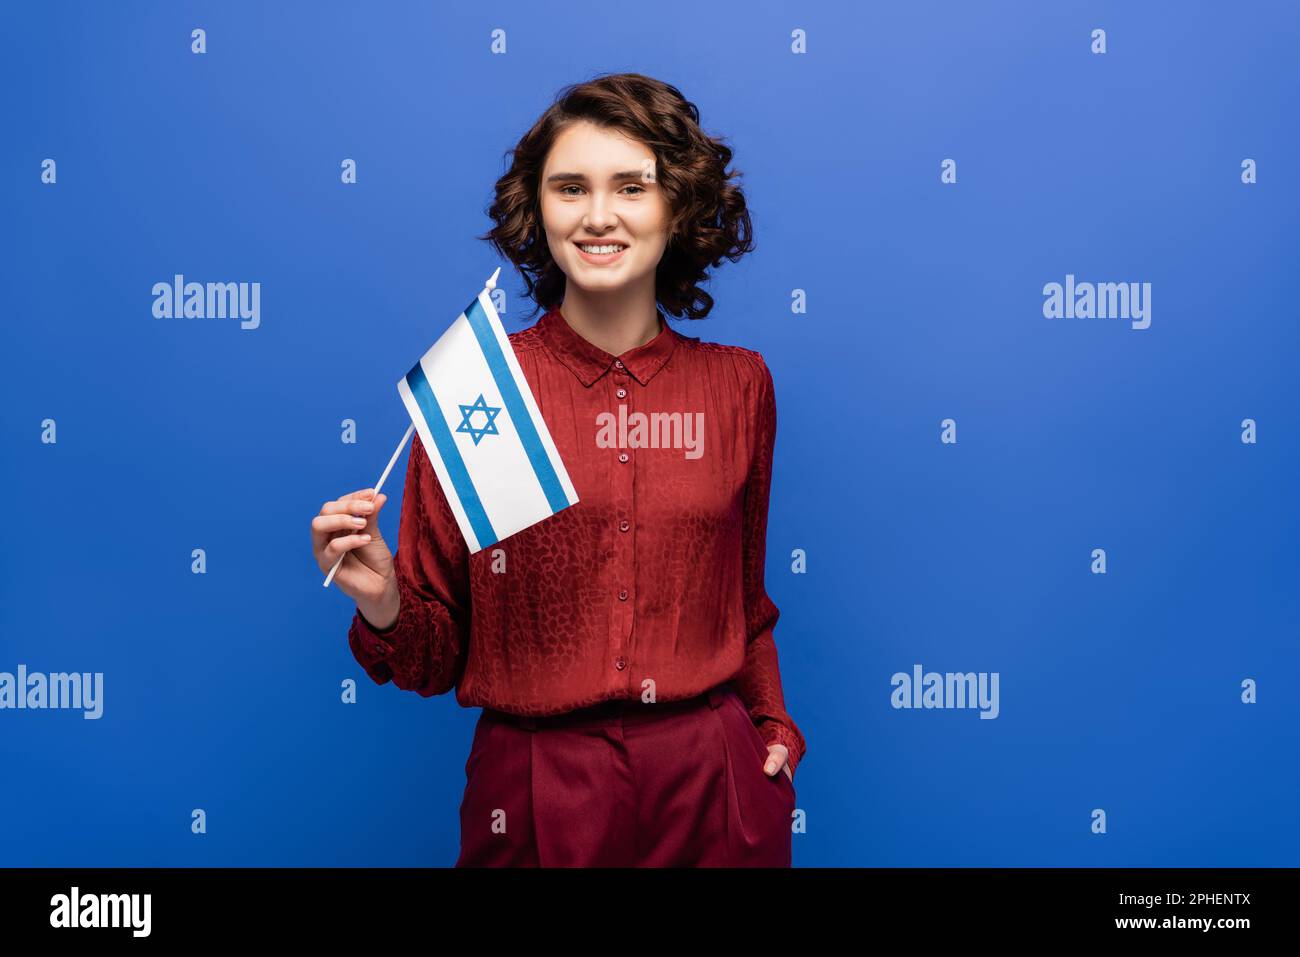 Glücklicher Lehrer der hebräischen Sprache hält die Flagge Israels isoliert auf blauem Stockbild Stockfoto